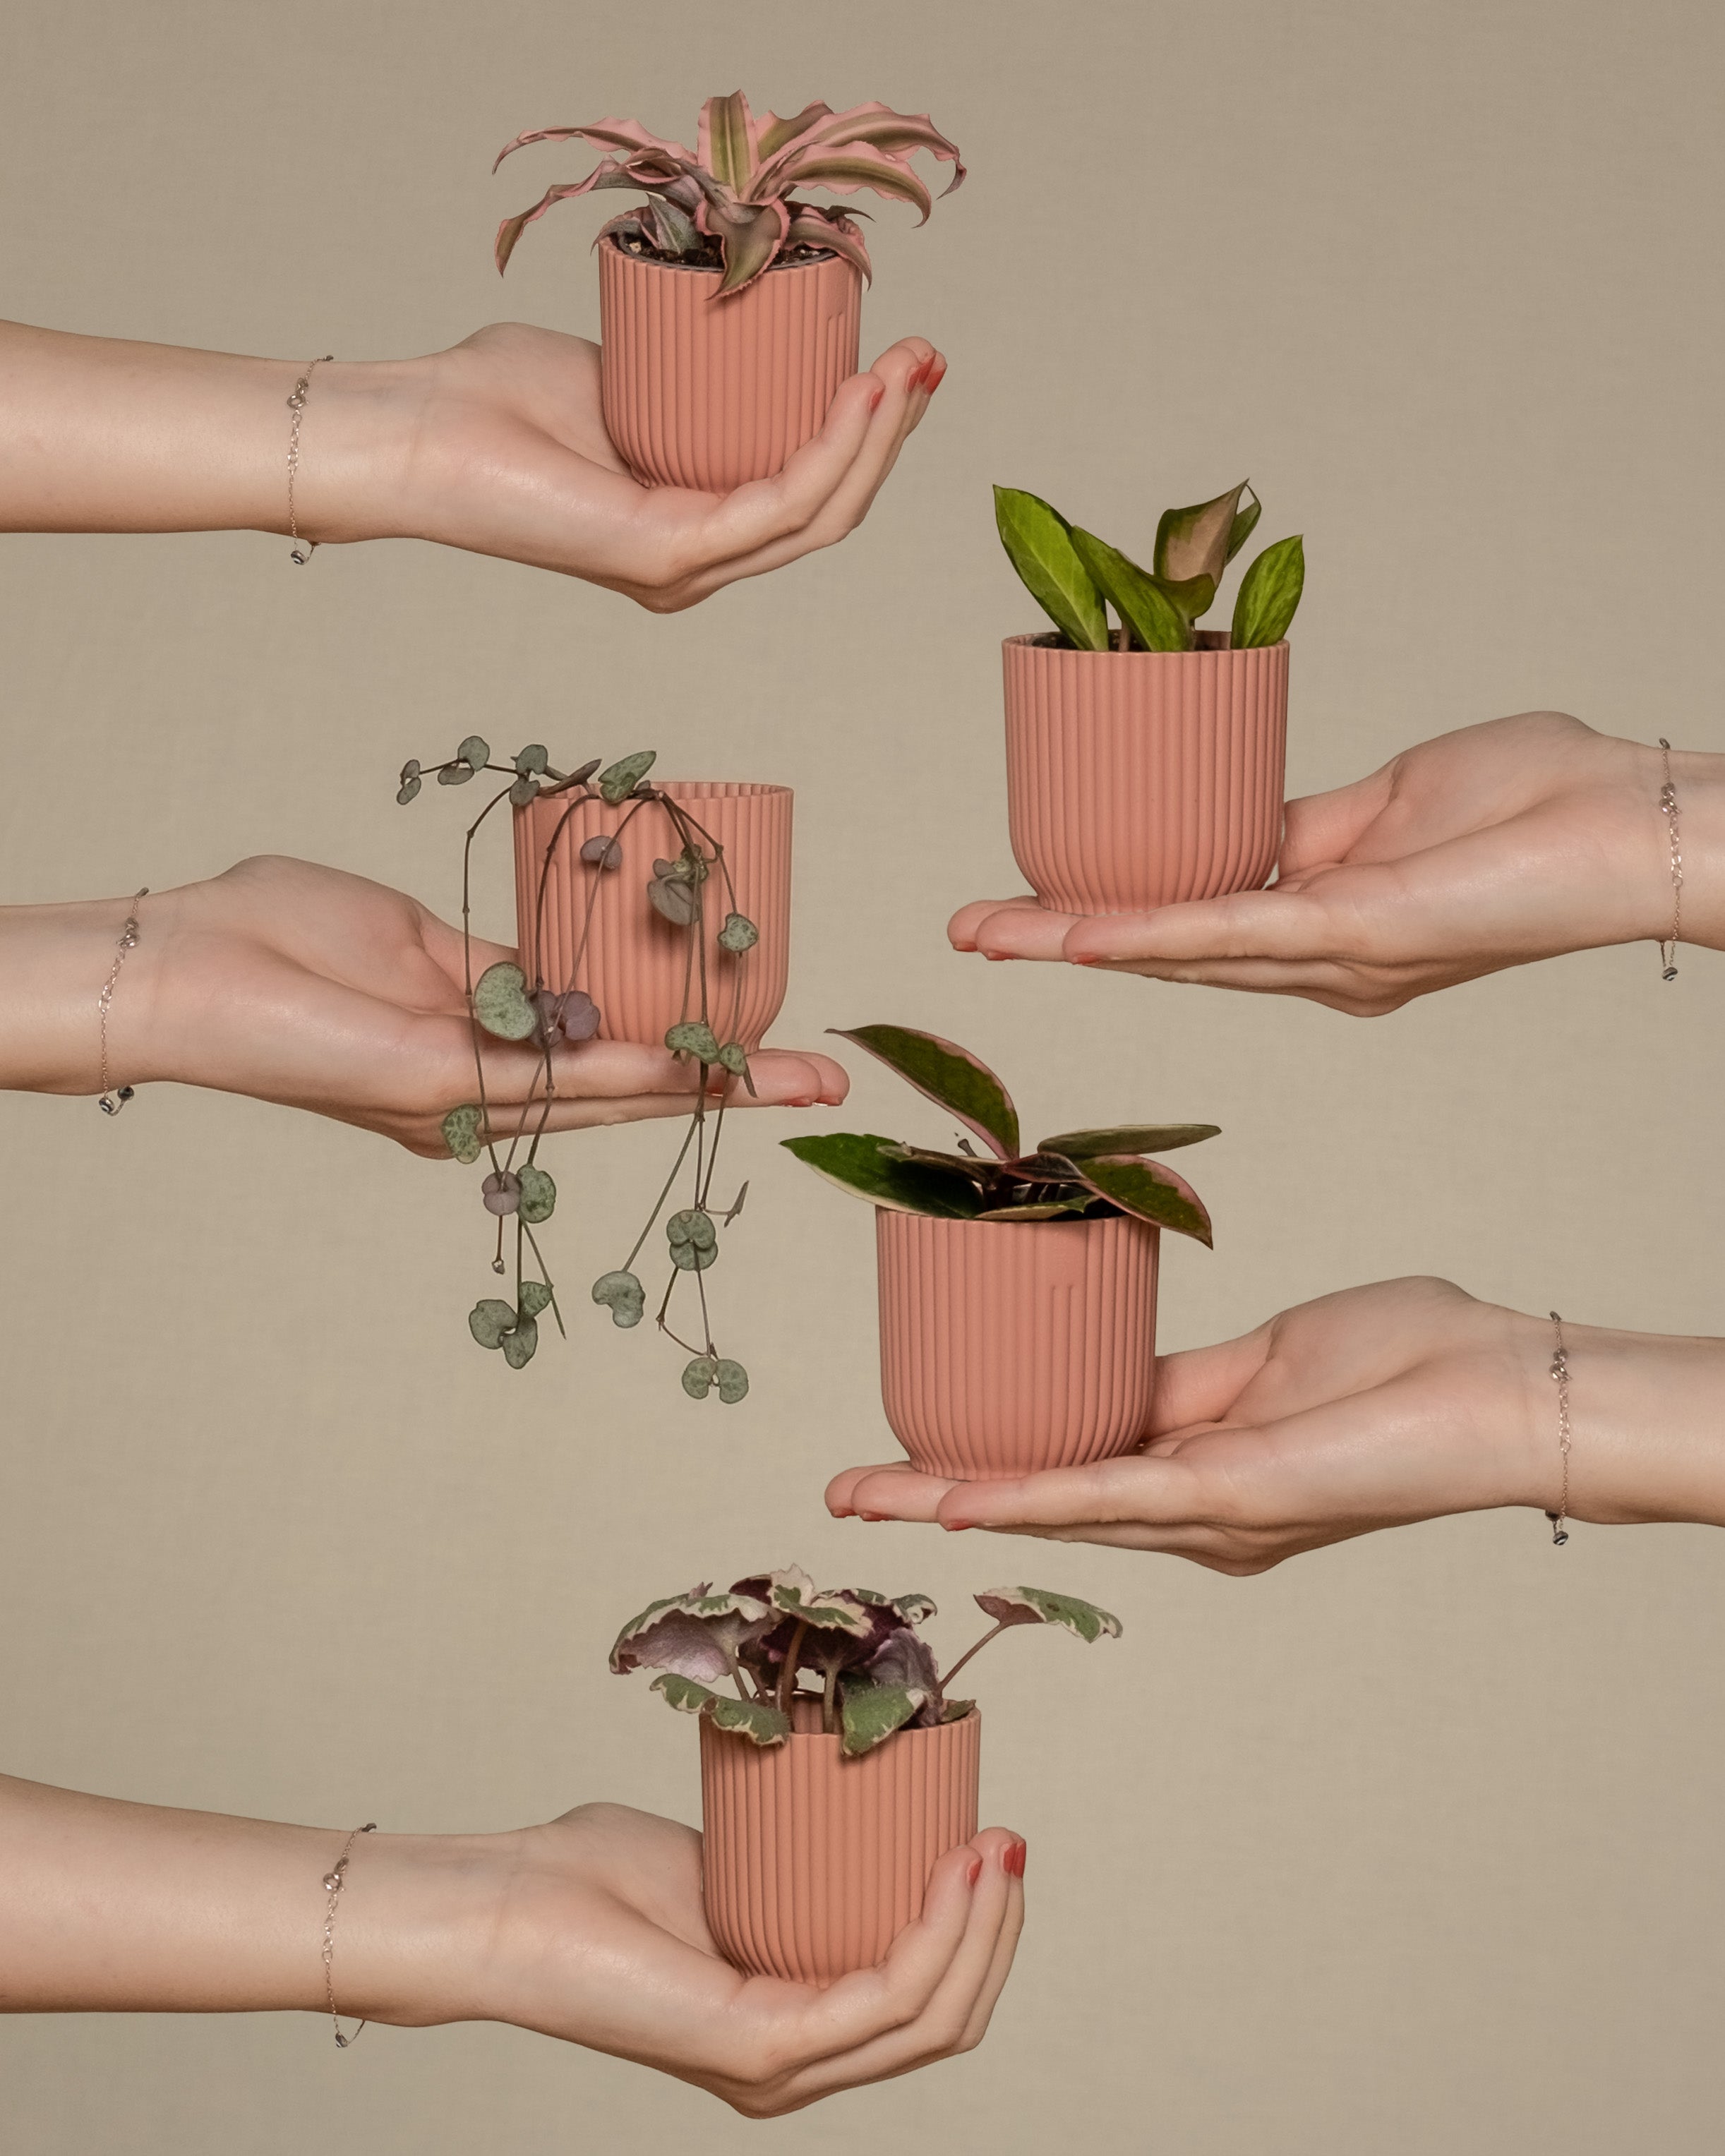 Babypflanzen-Quintett mit rosa Blättern wird von fünf Händen links und rechts ins Bild gehalten 